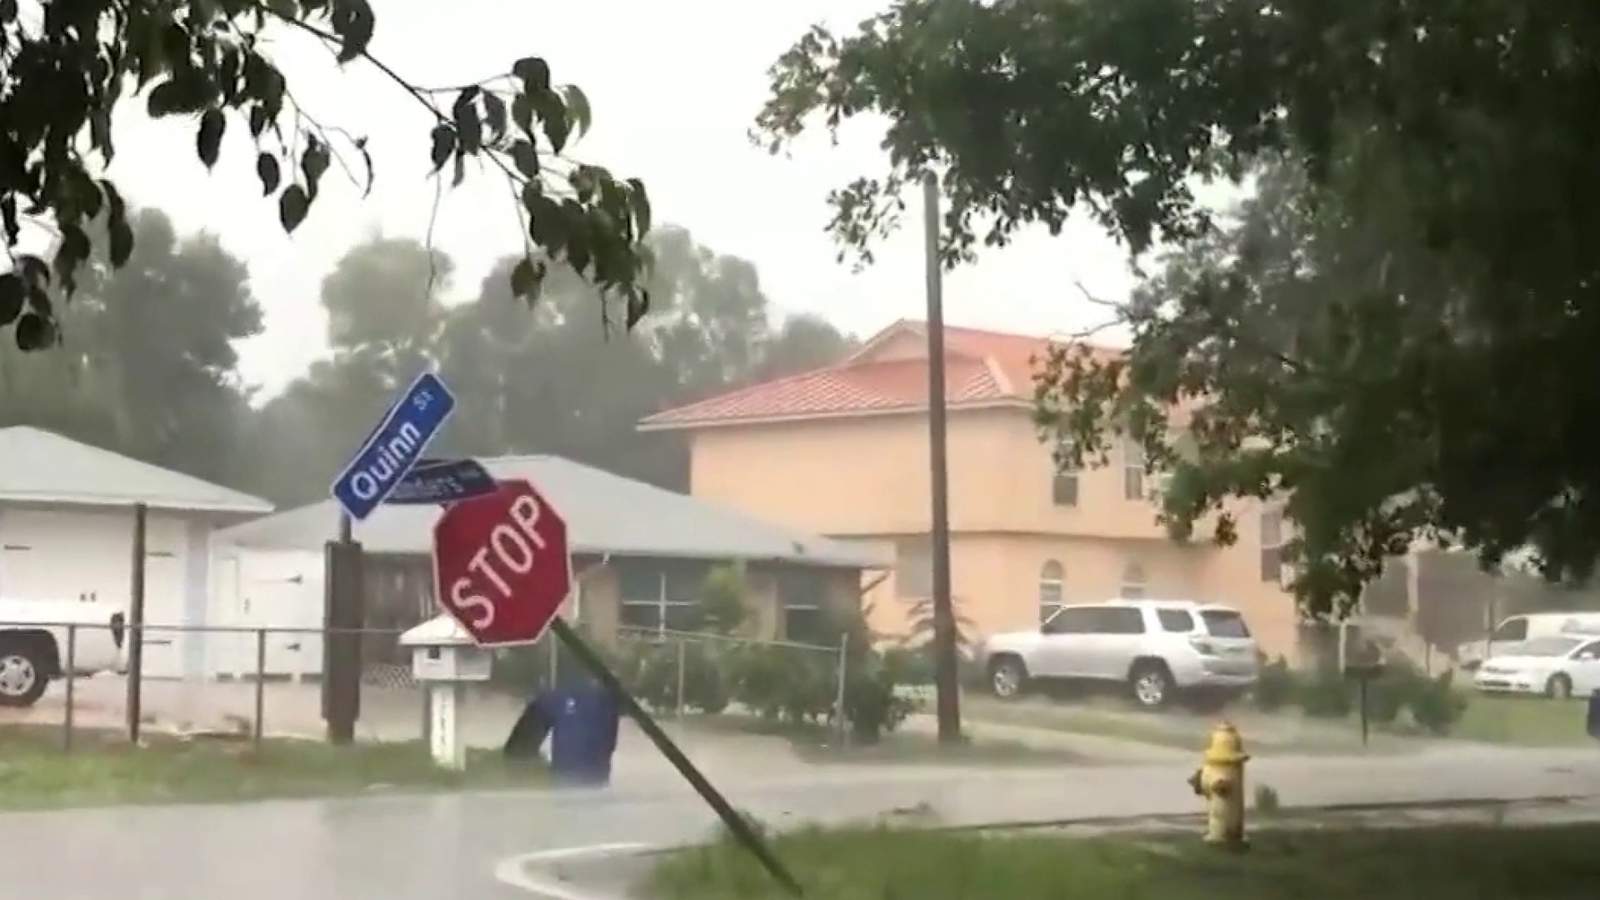 Utility crews on standby as Eta makes its way through Florida